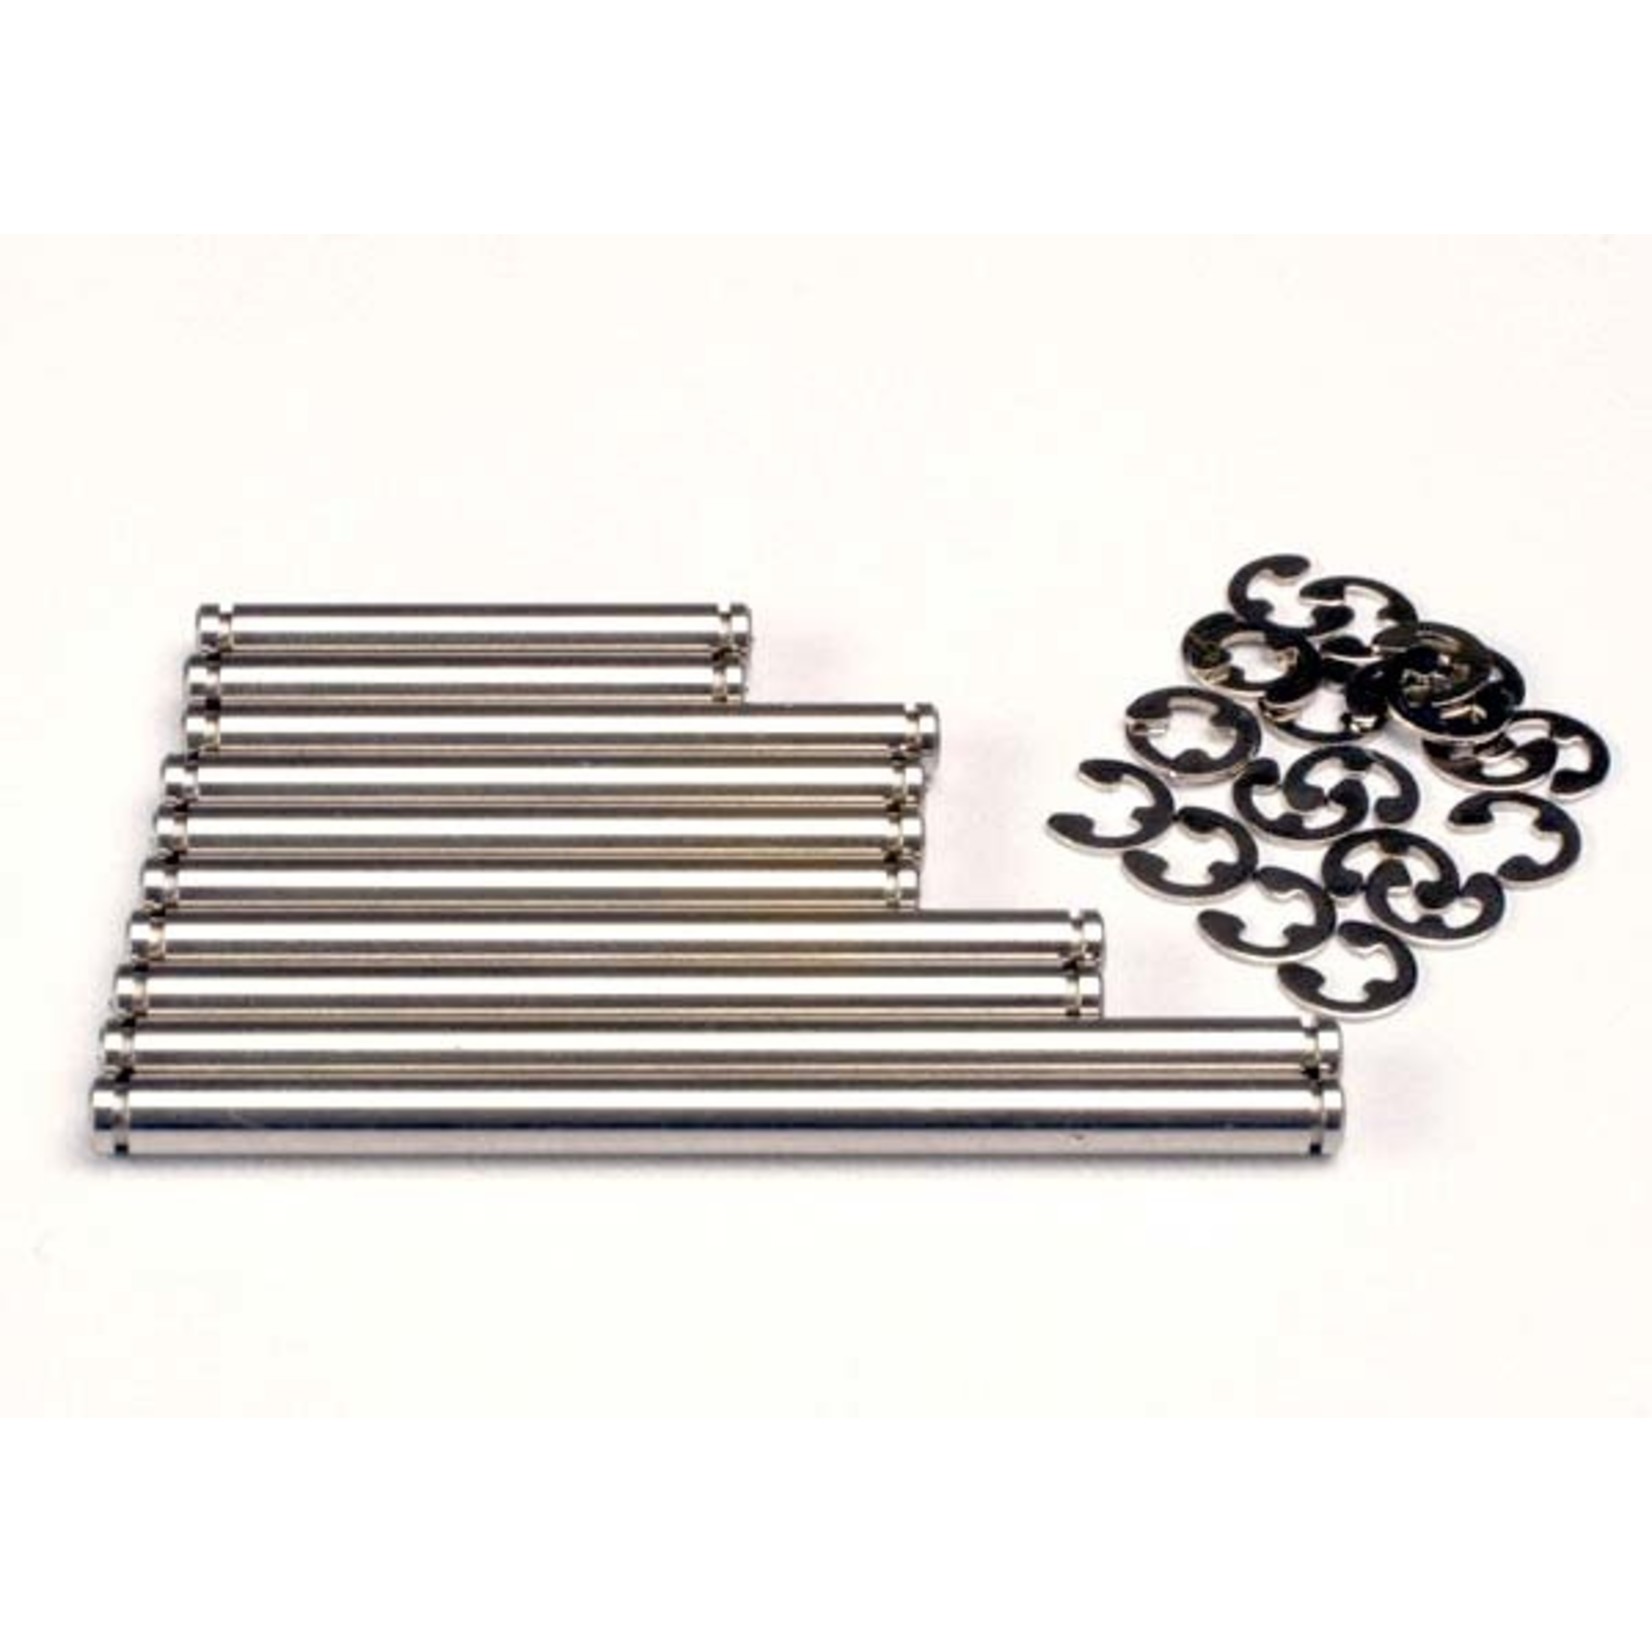 Traxxas 2739 - Suspension Pin Set, Stainless steel. (W/E-C